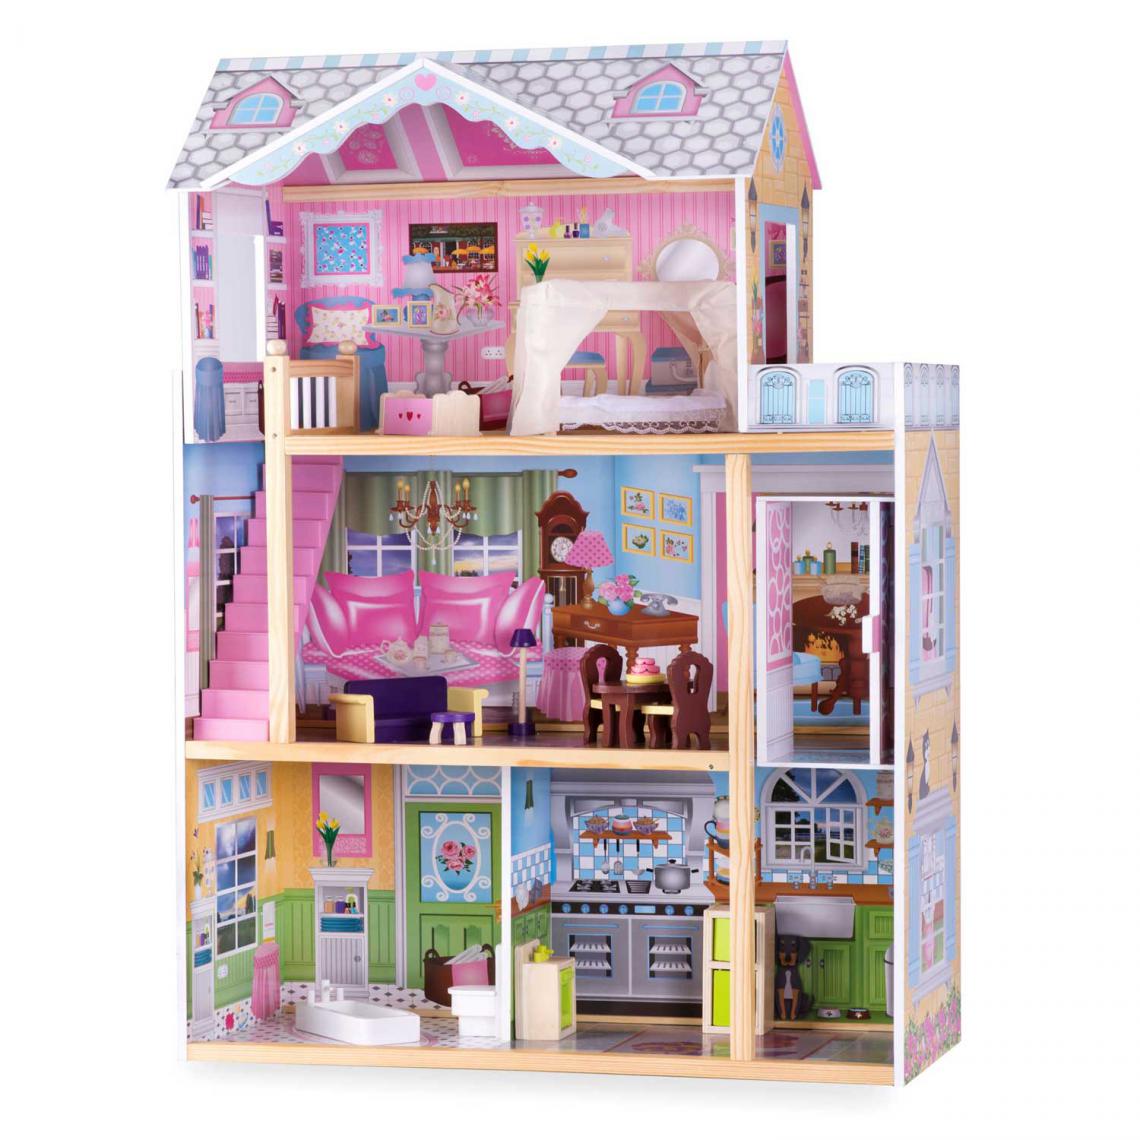 Hucoco - HATTIE | Maison de poupées en bois 4 pièces + terrasse | 116x82x29 cm | Dès 3 ans | 10 meubles/accessoires inclus - Rose - Maisons de poupées